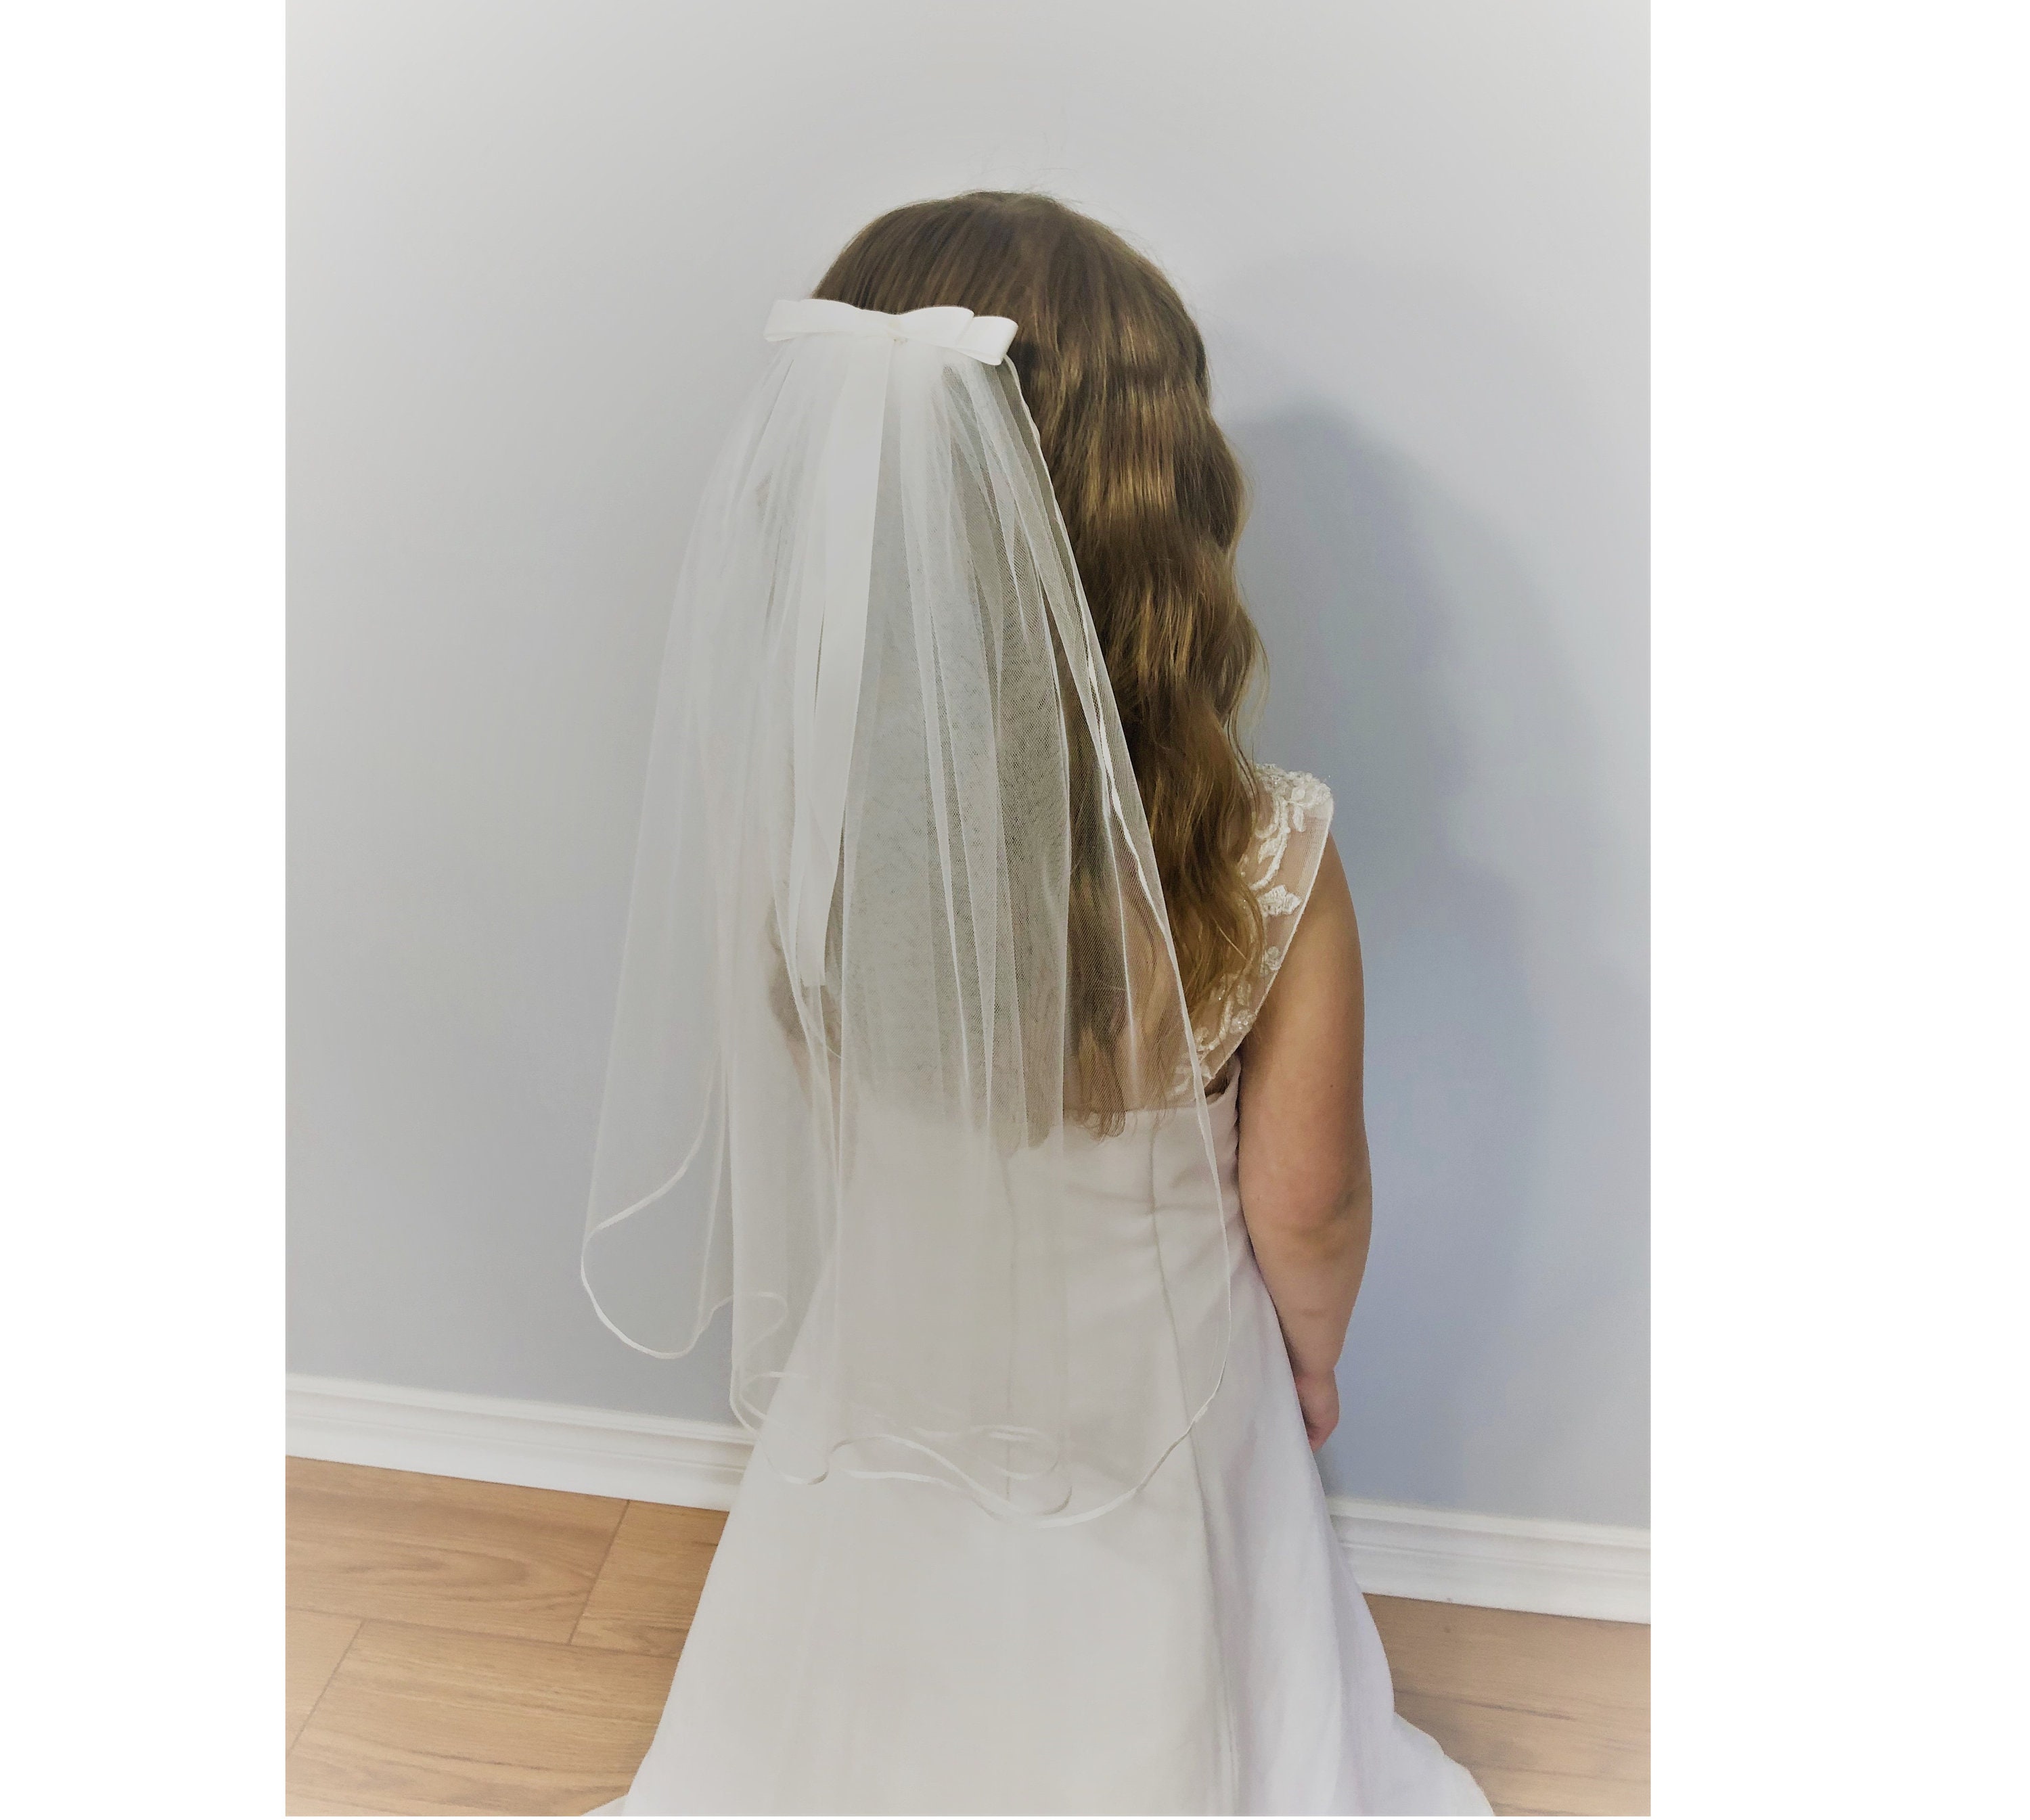 Bridal Bride Wedding Veil Communion comb headpiece white lace trim tulle  28”